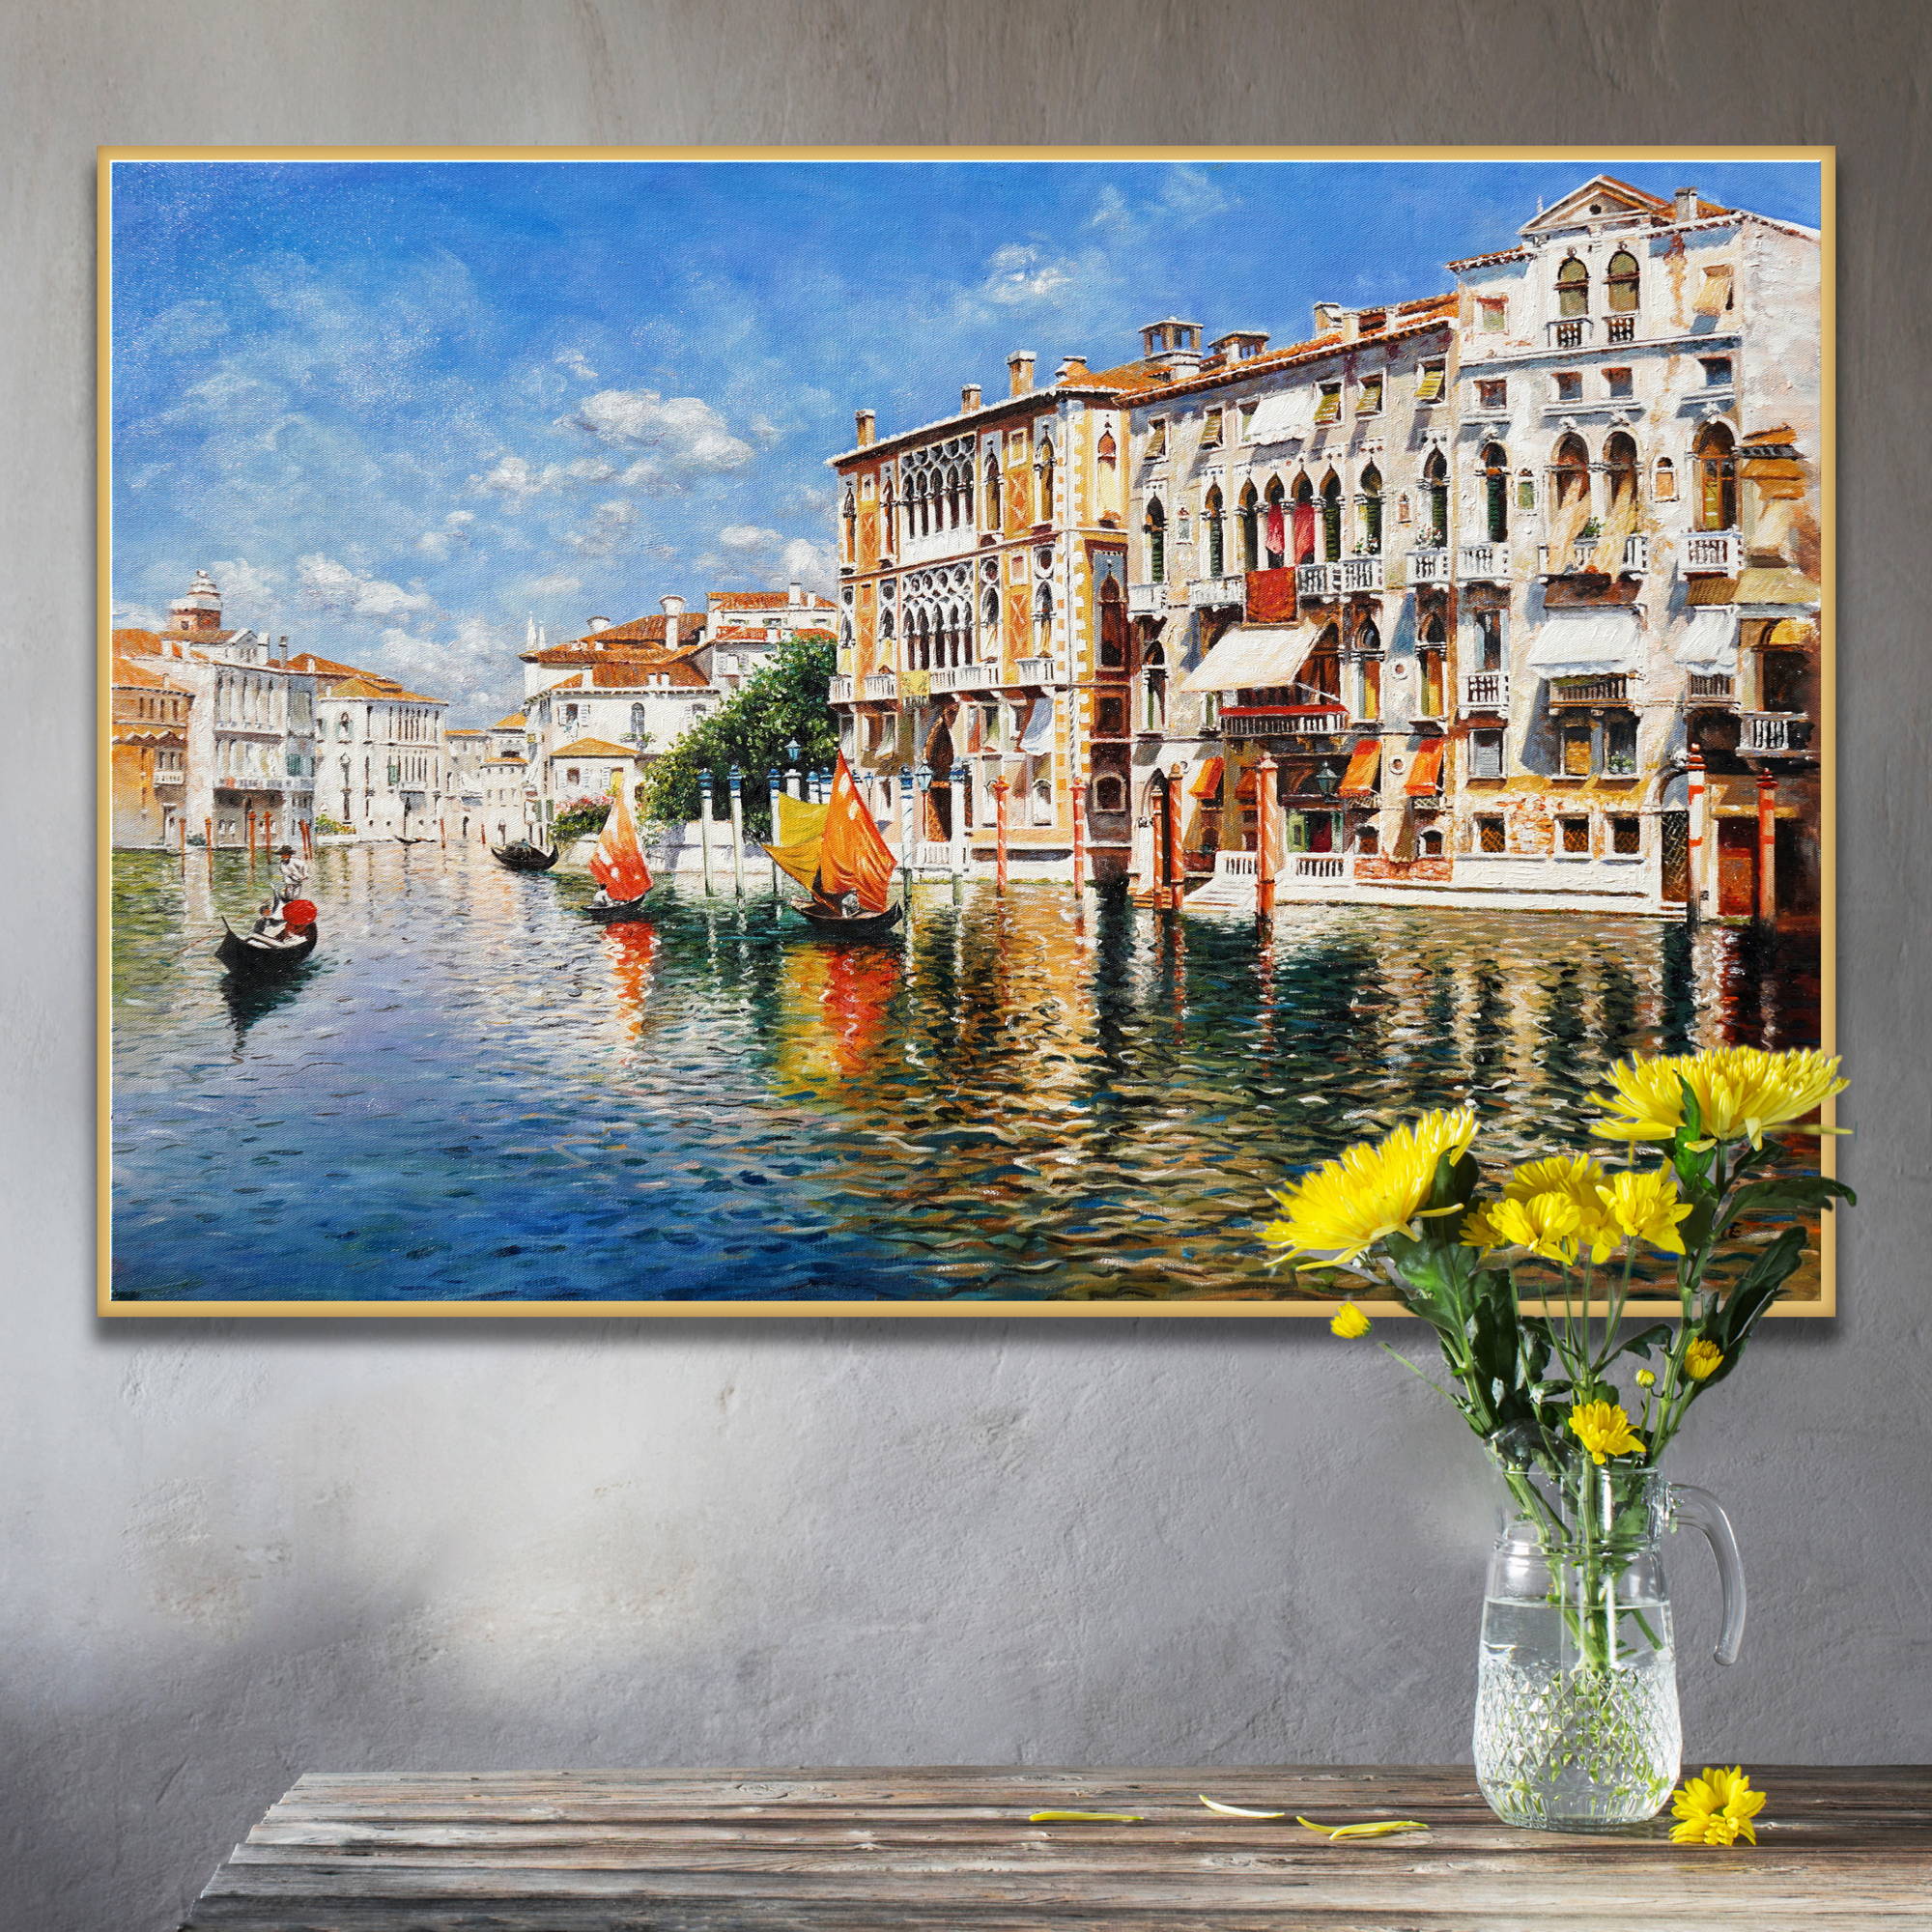 Dipinto canale veneziano con edifici storici e gondole